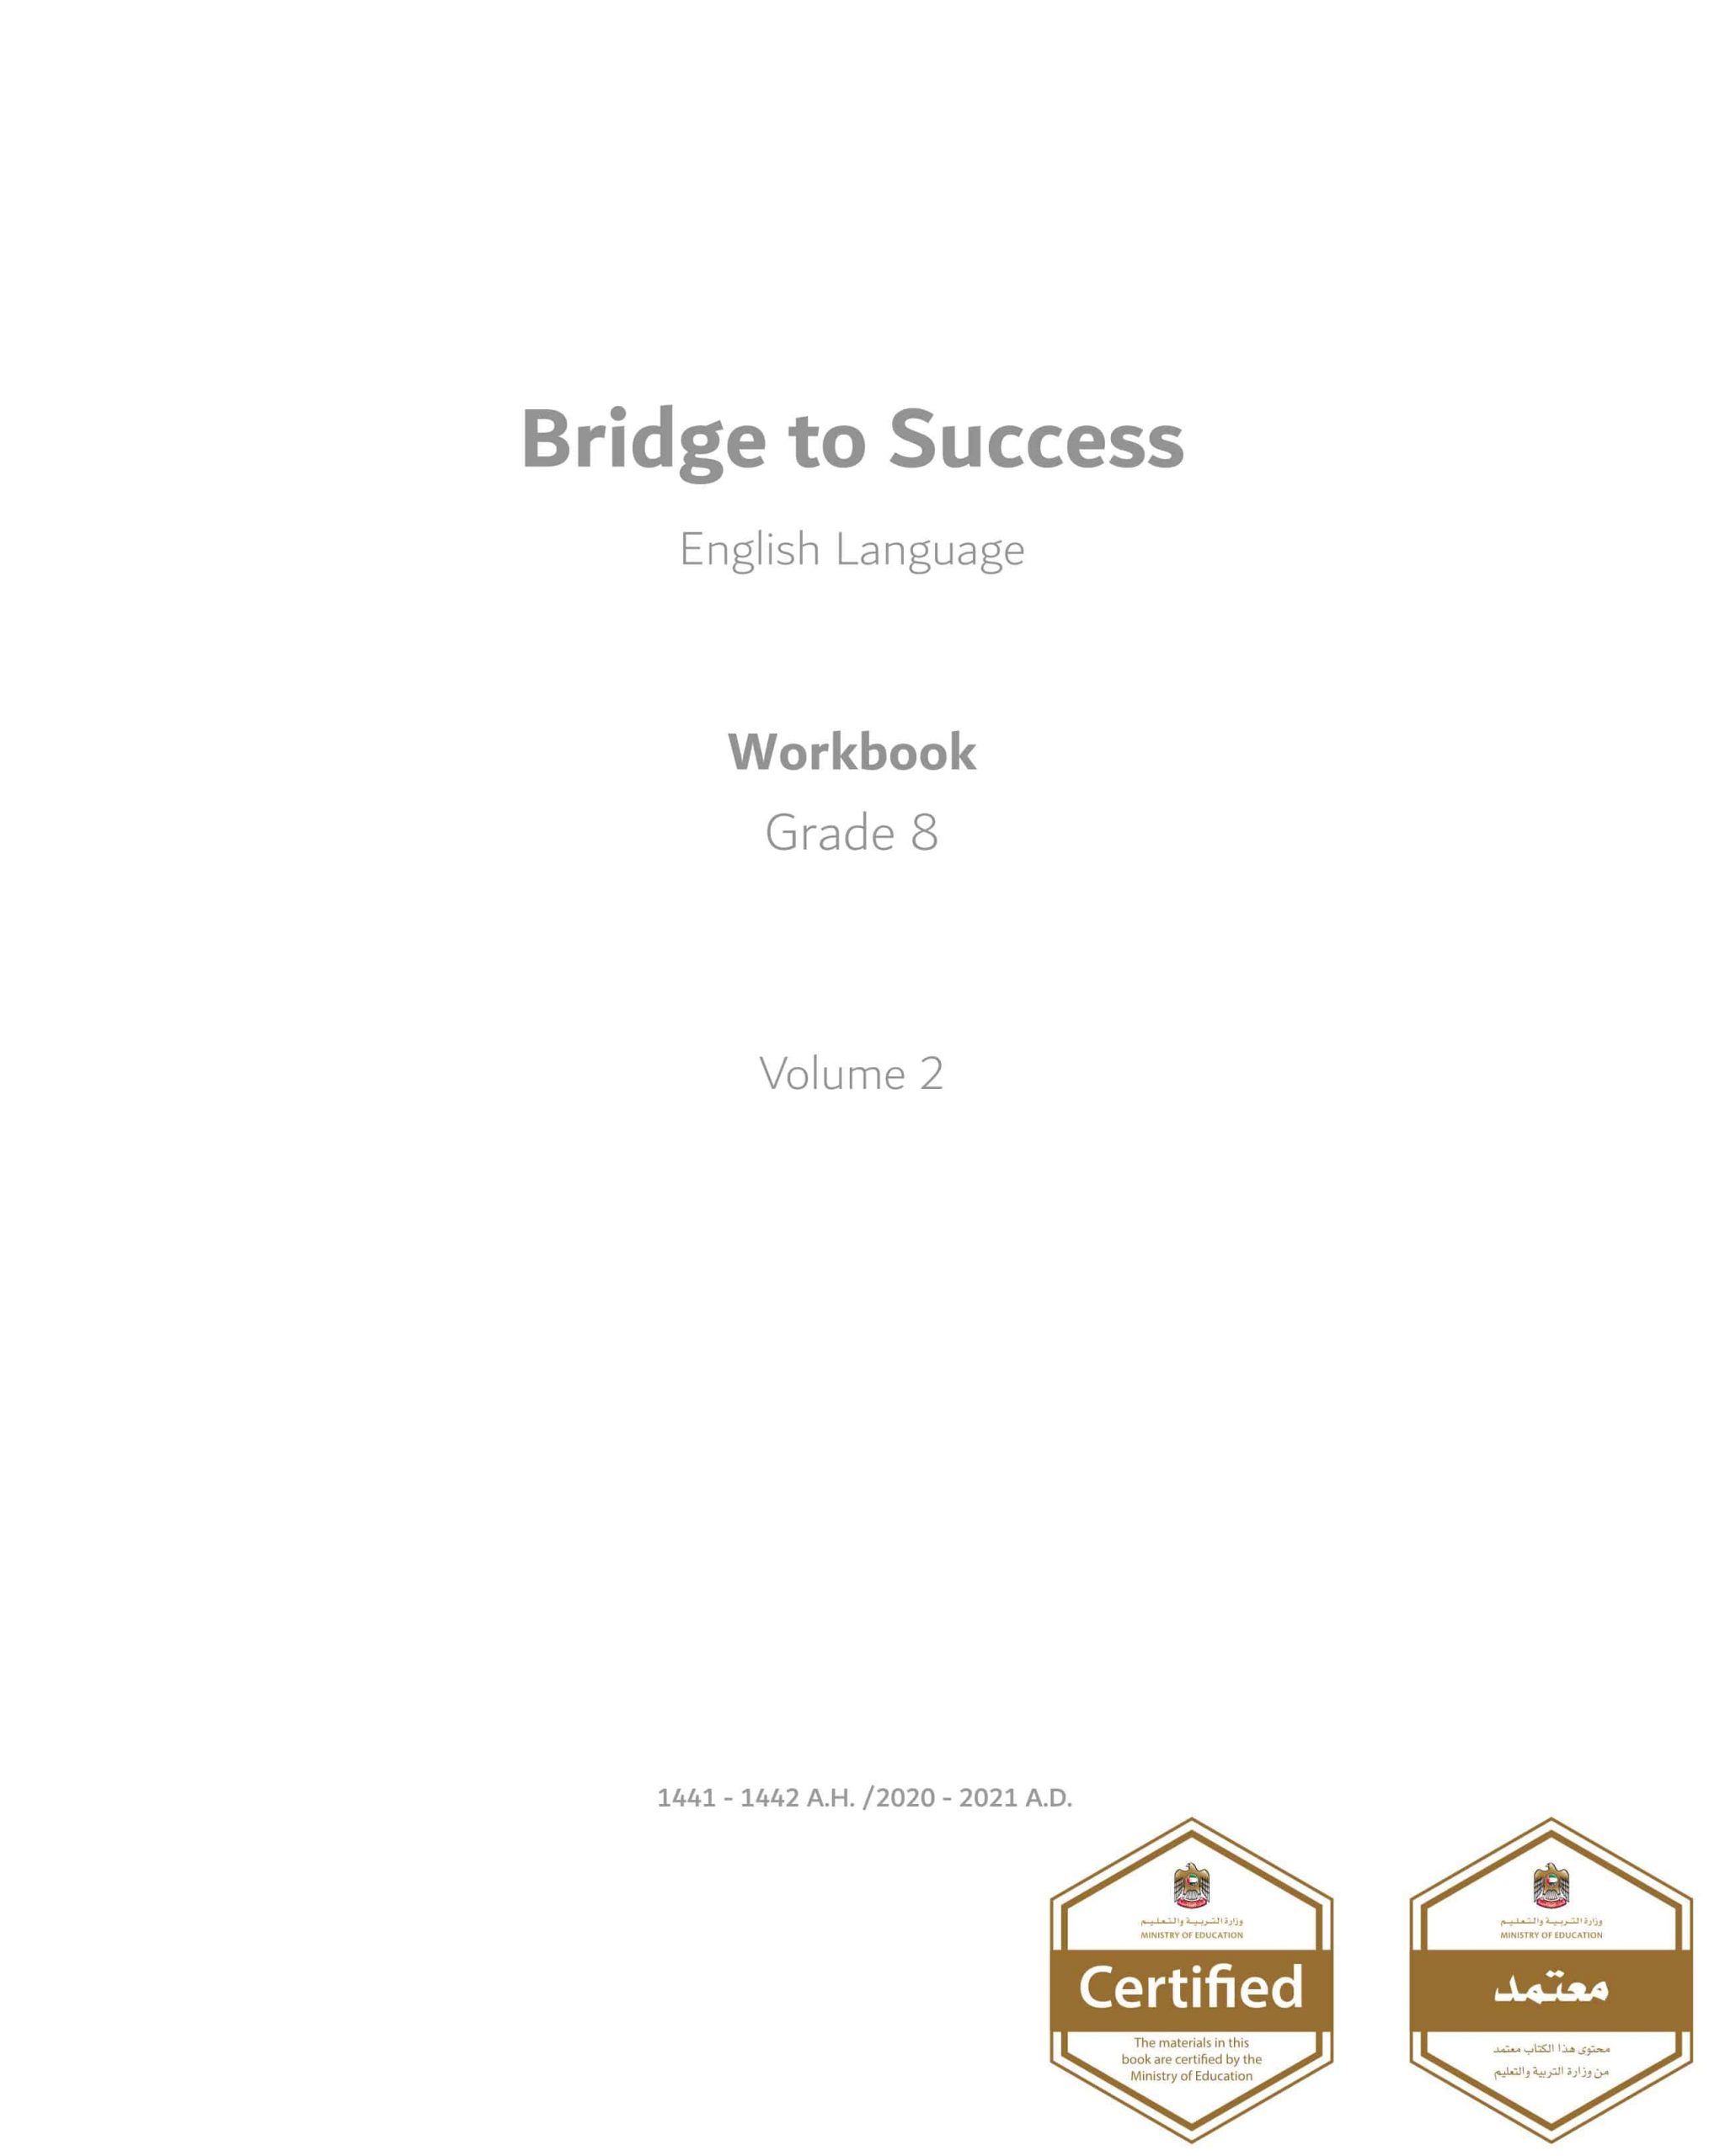 كتاب النشاط work book الفصل الدراسي الثاني 2020-2021 الصف الثامن مادة اللغة الانجليزية 